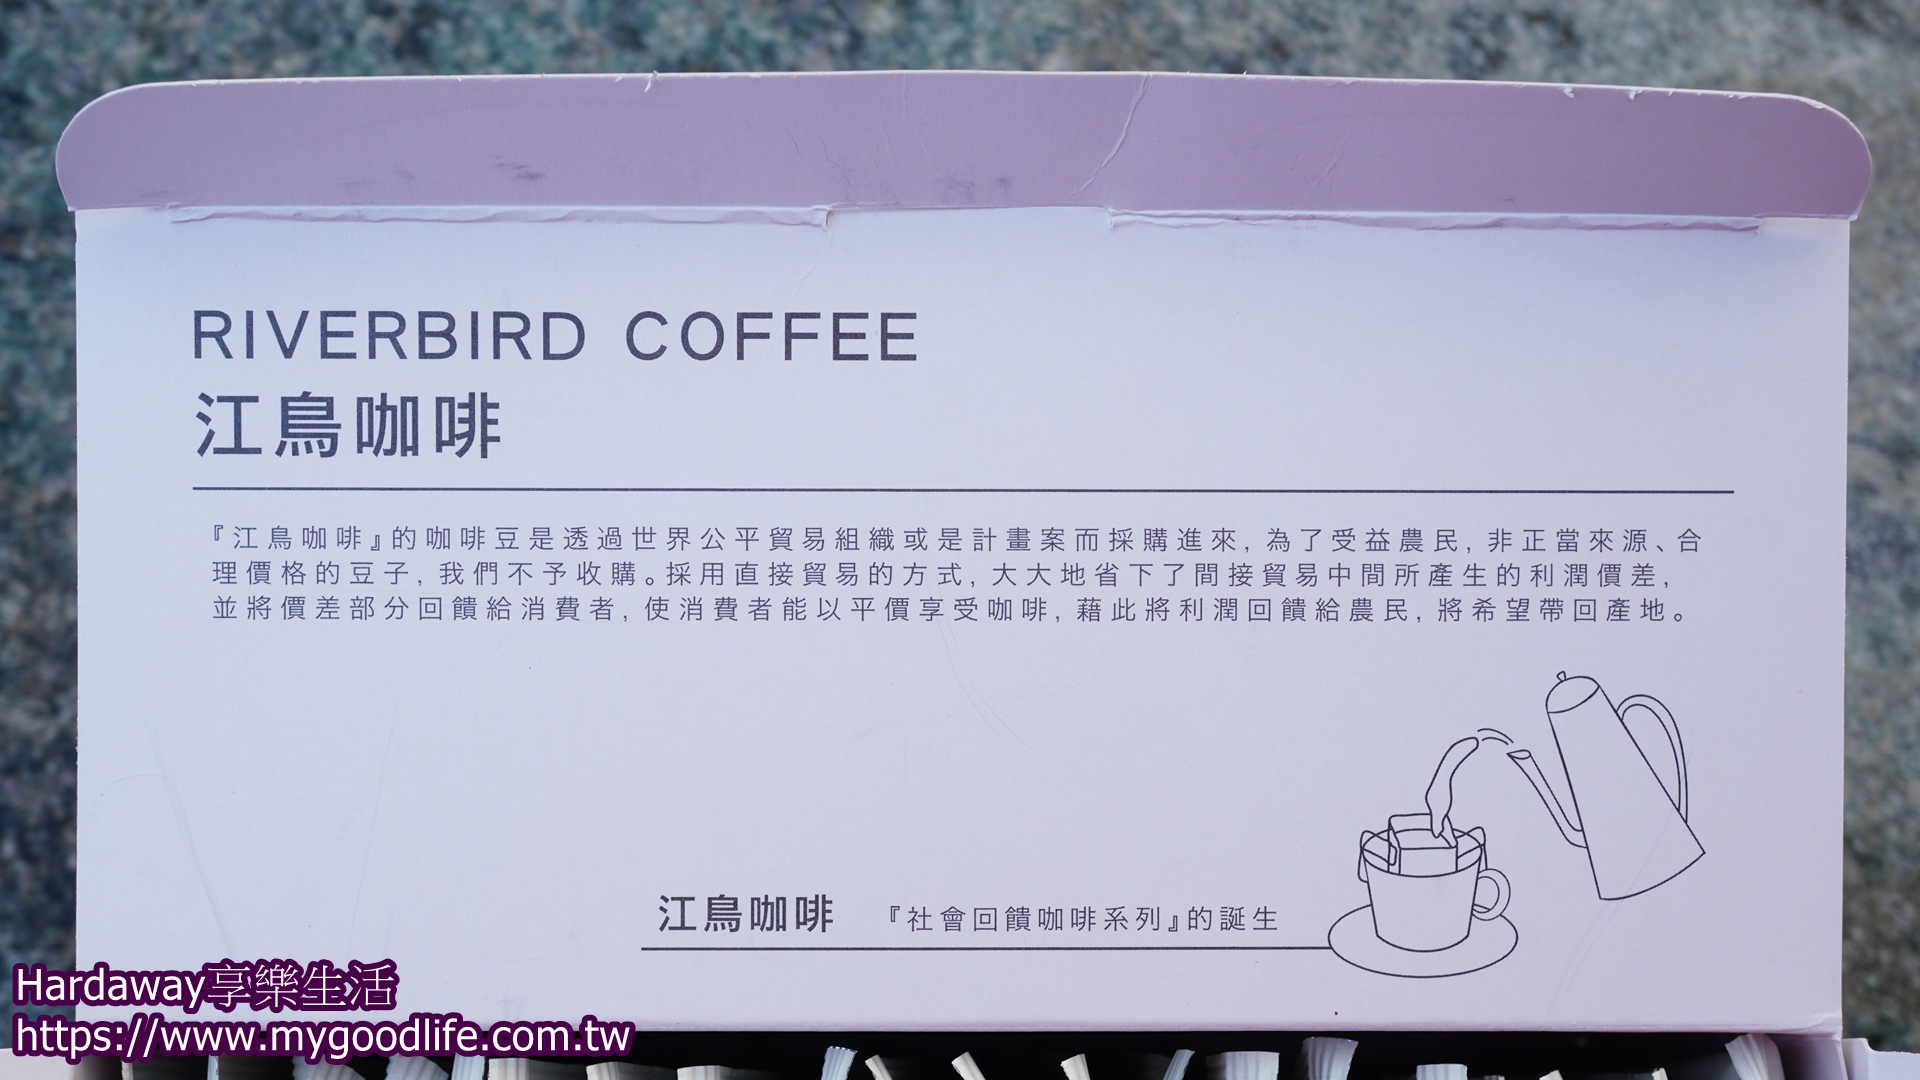 江鳥咖啡經營理念